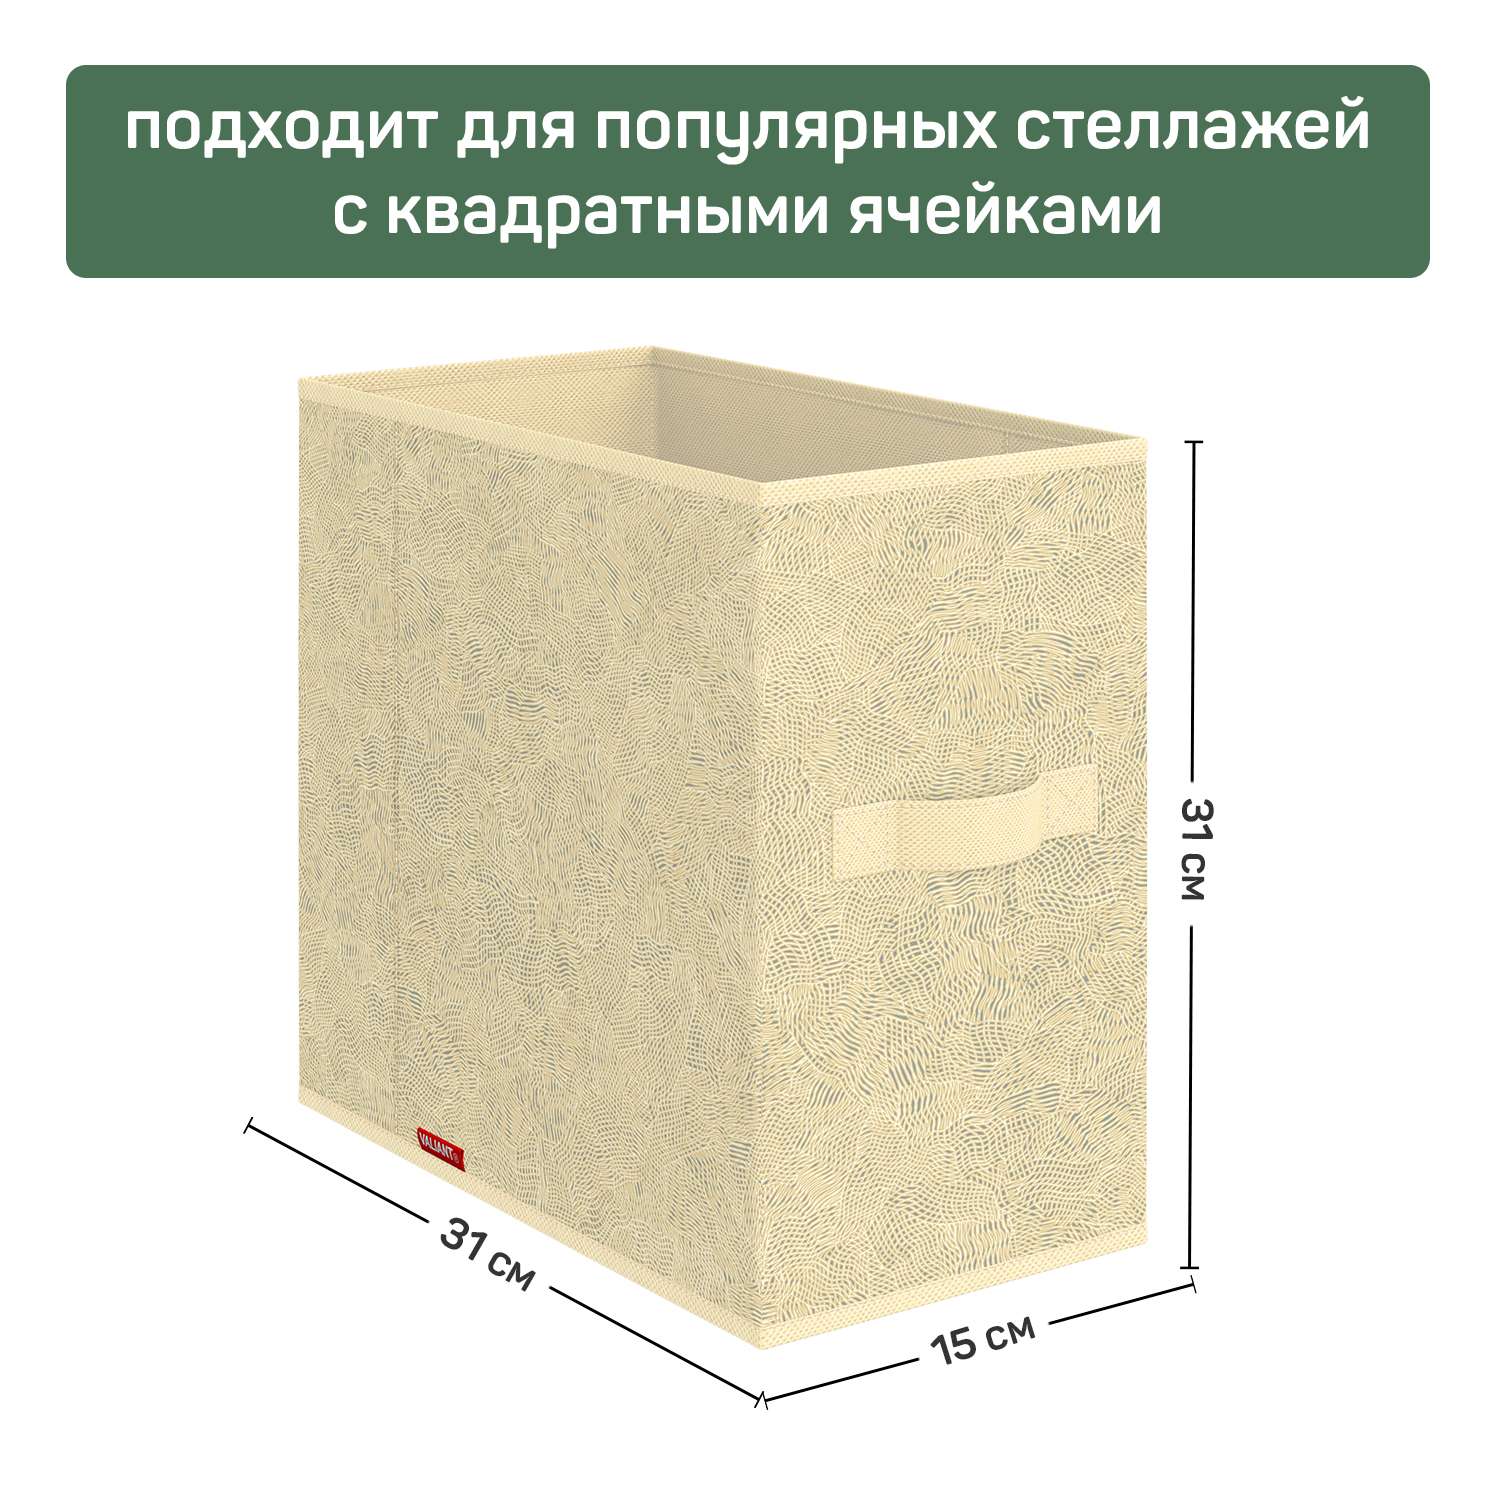 Короб стеллажный VALIANT 15*31*31 см набор 4 шт - фото 3